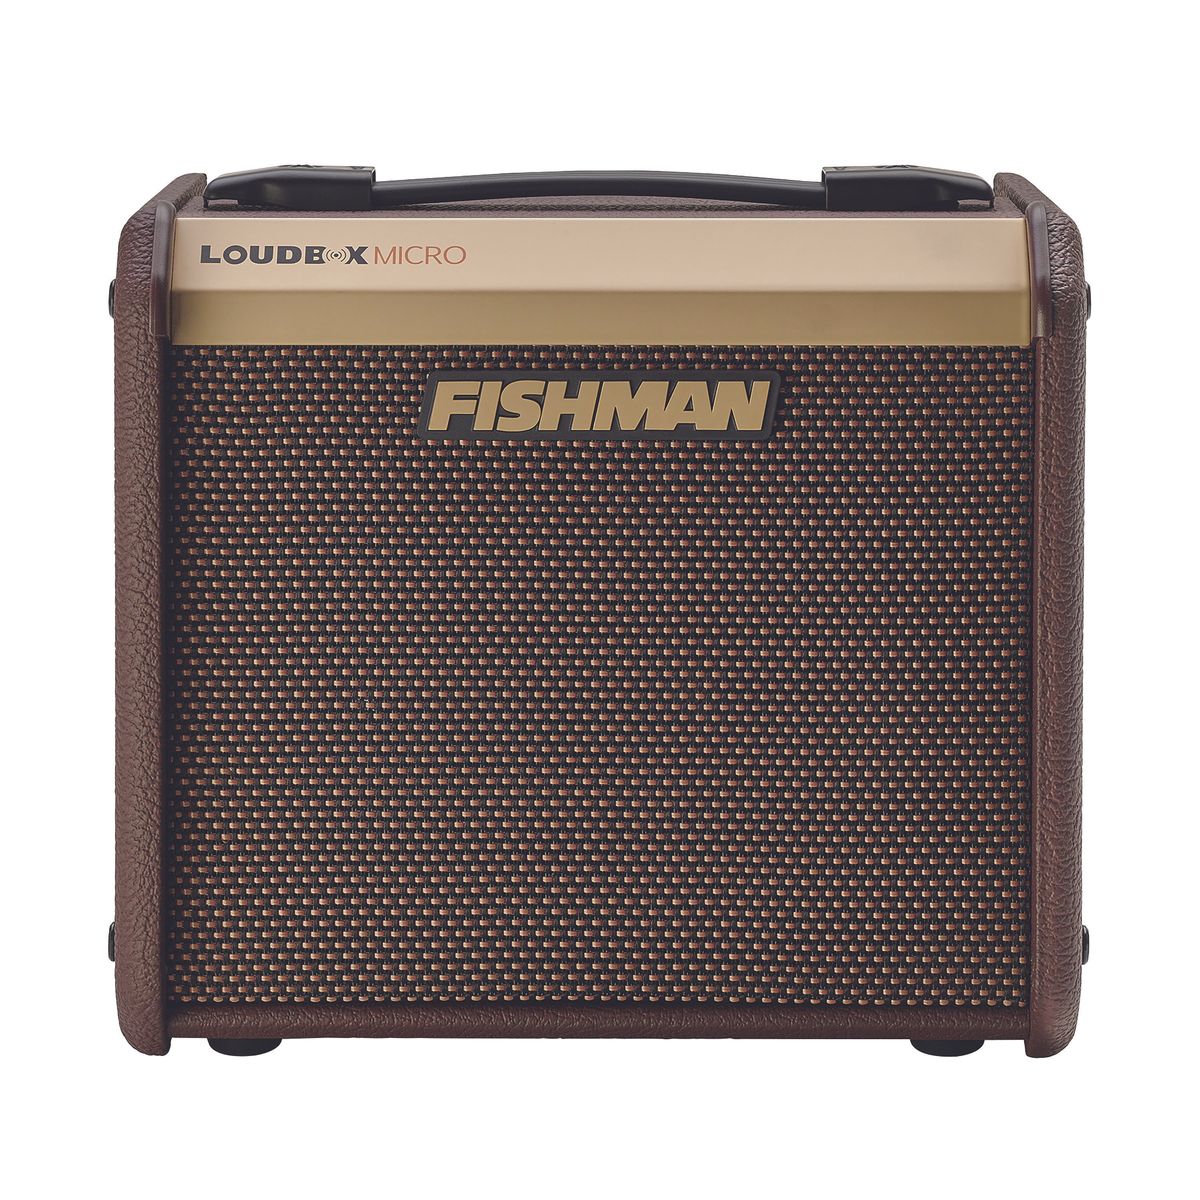 Fishman Loudbox Micro Review